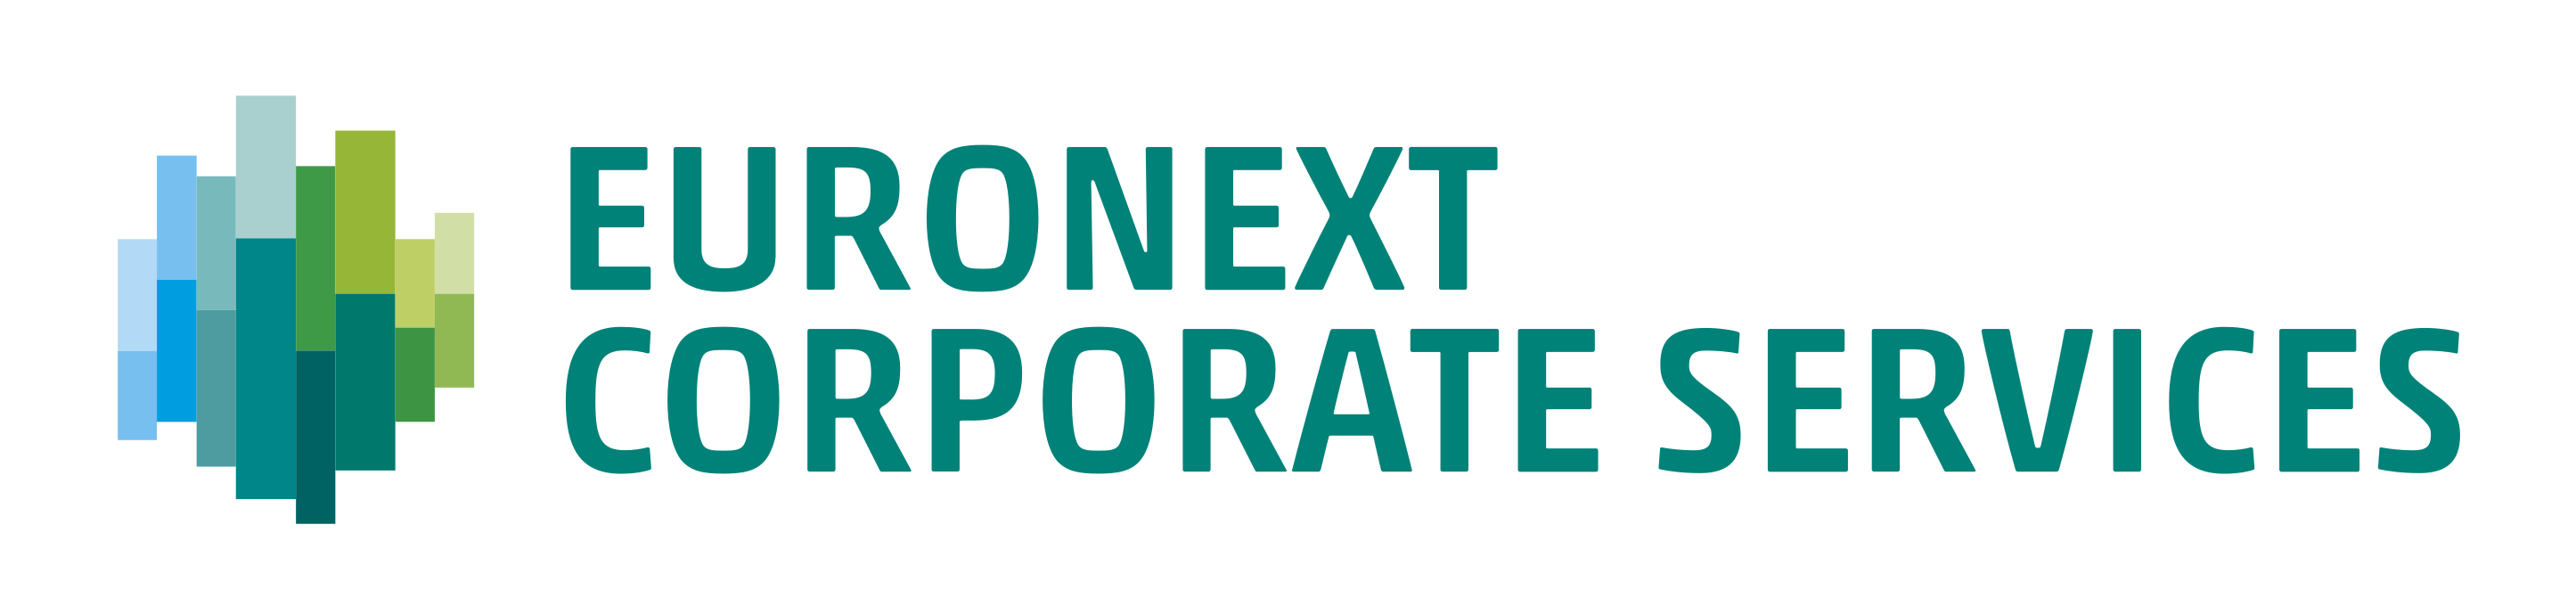 Euronext corporate services logos